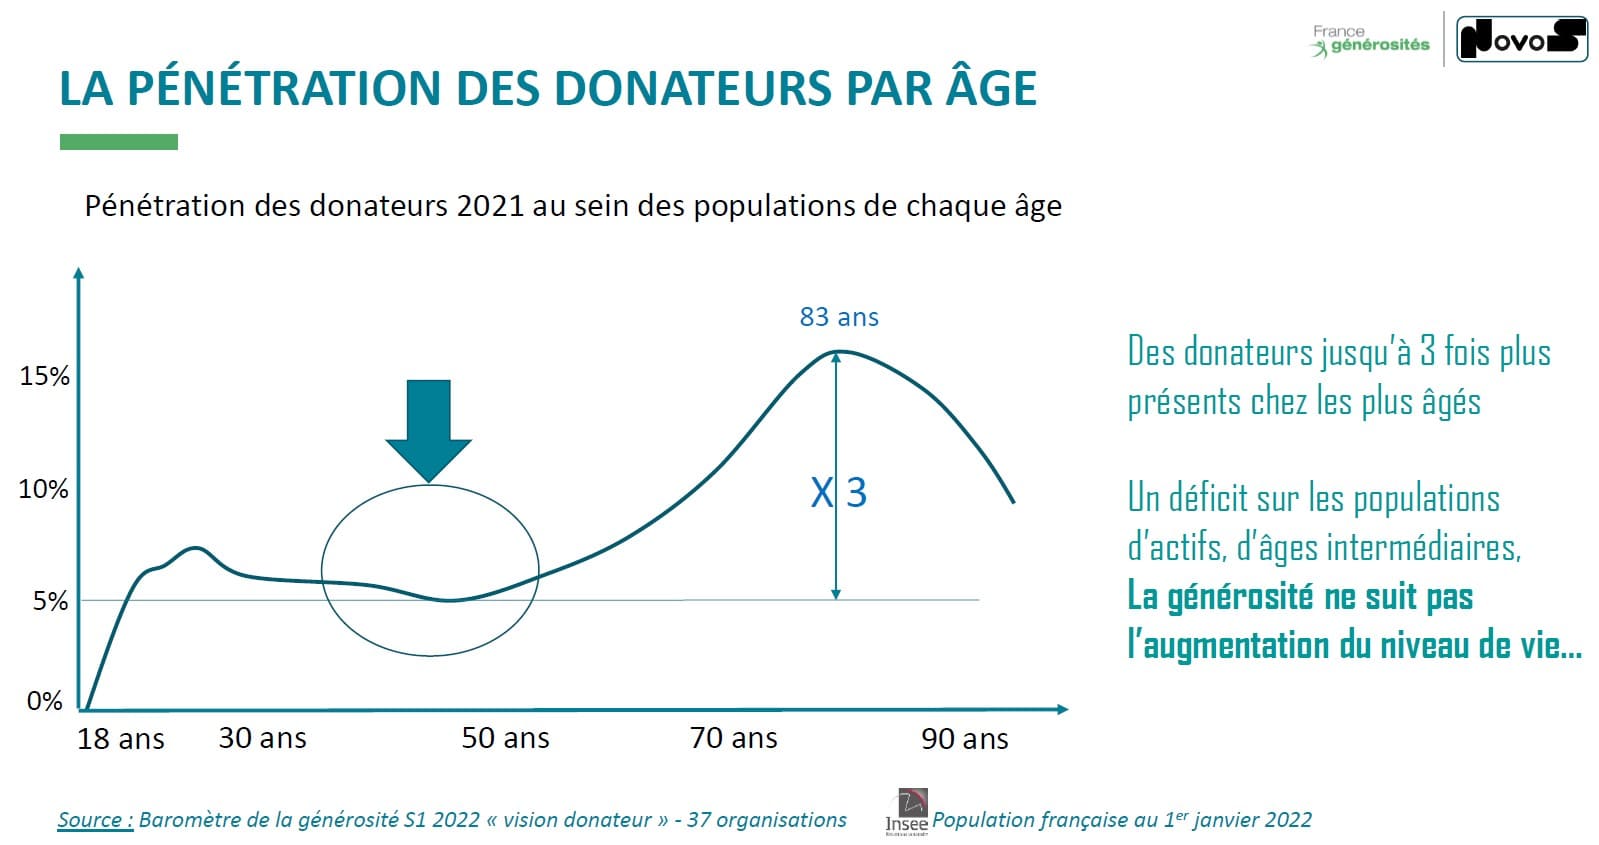 taux de pénétration par age - baromètre de la générosité vision donateur 2022